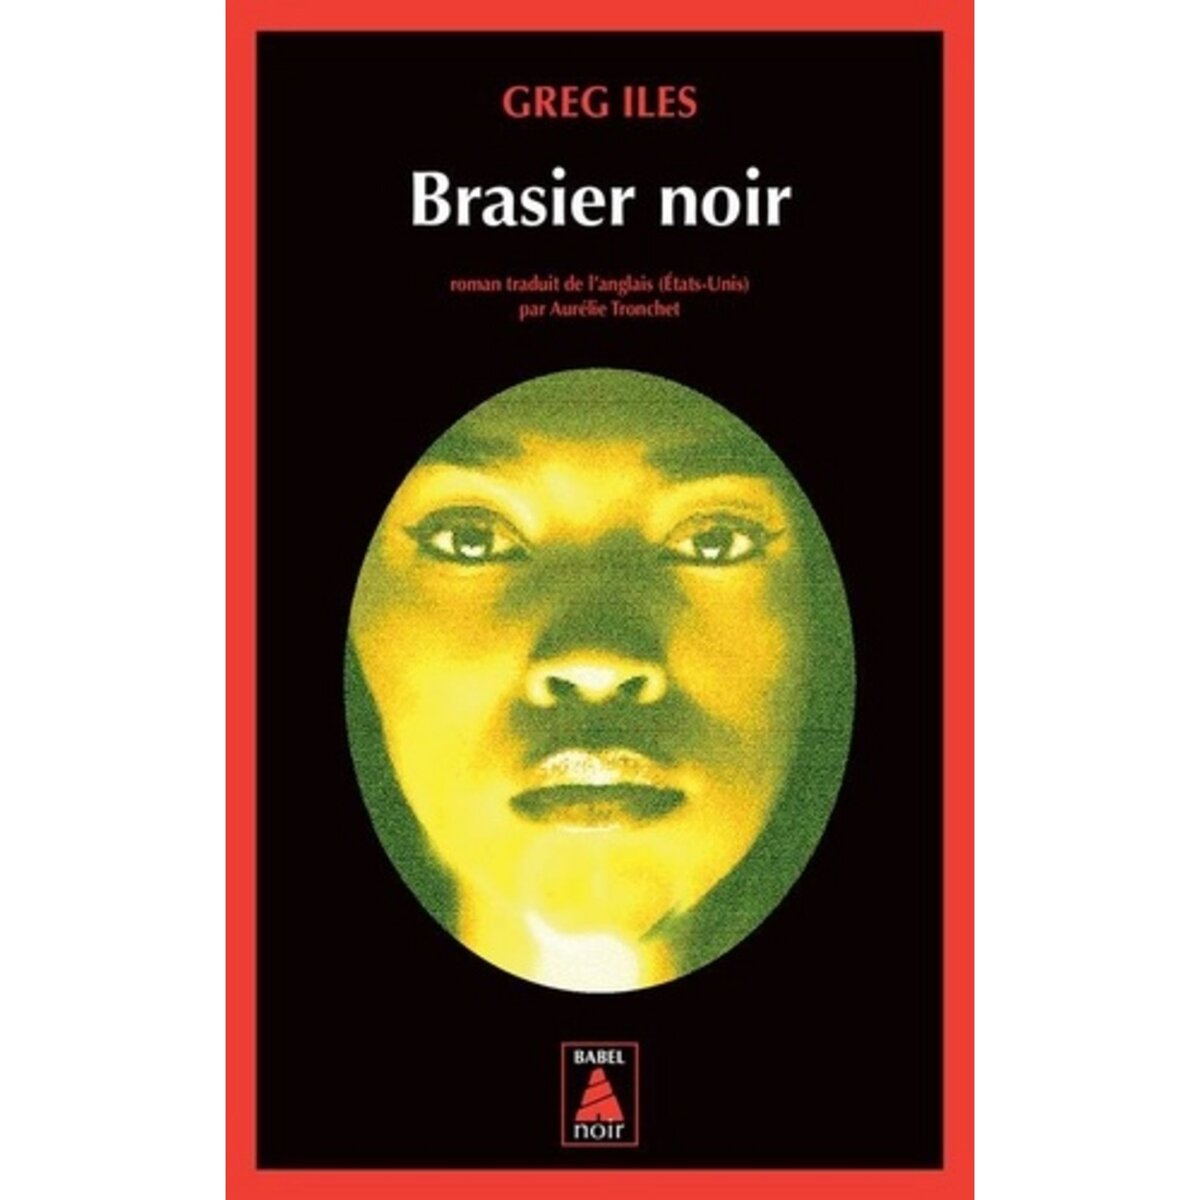  BRASIER NOIR, Iles Greg